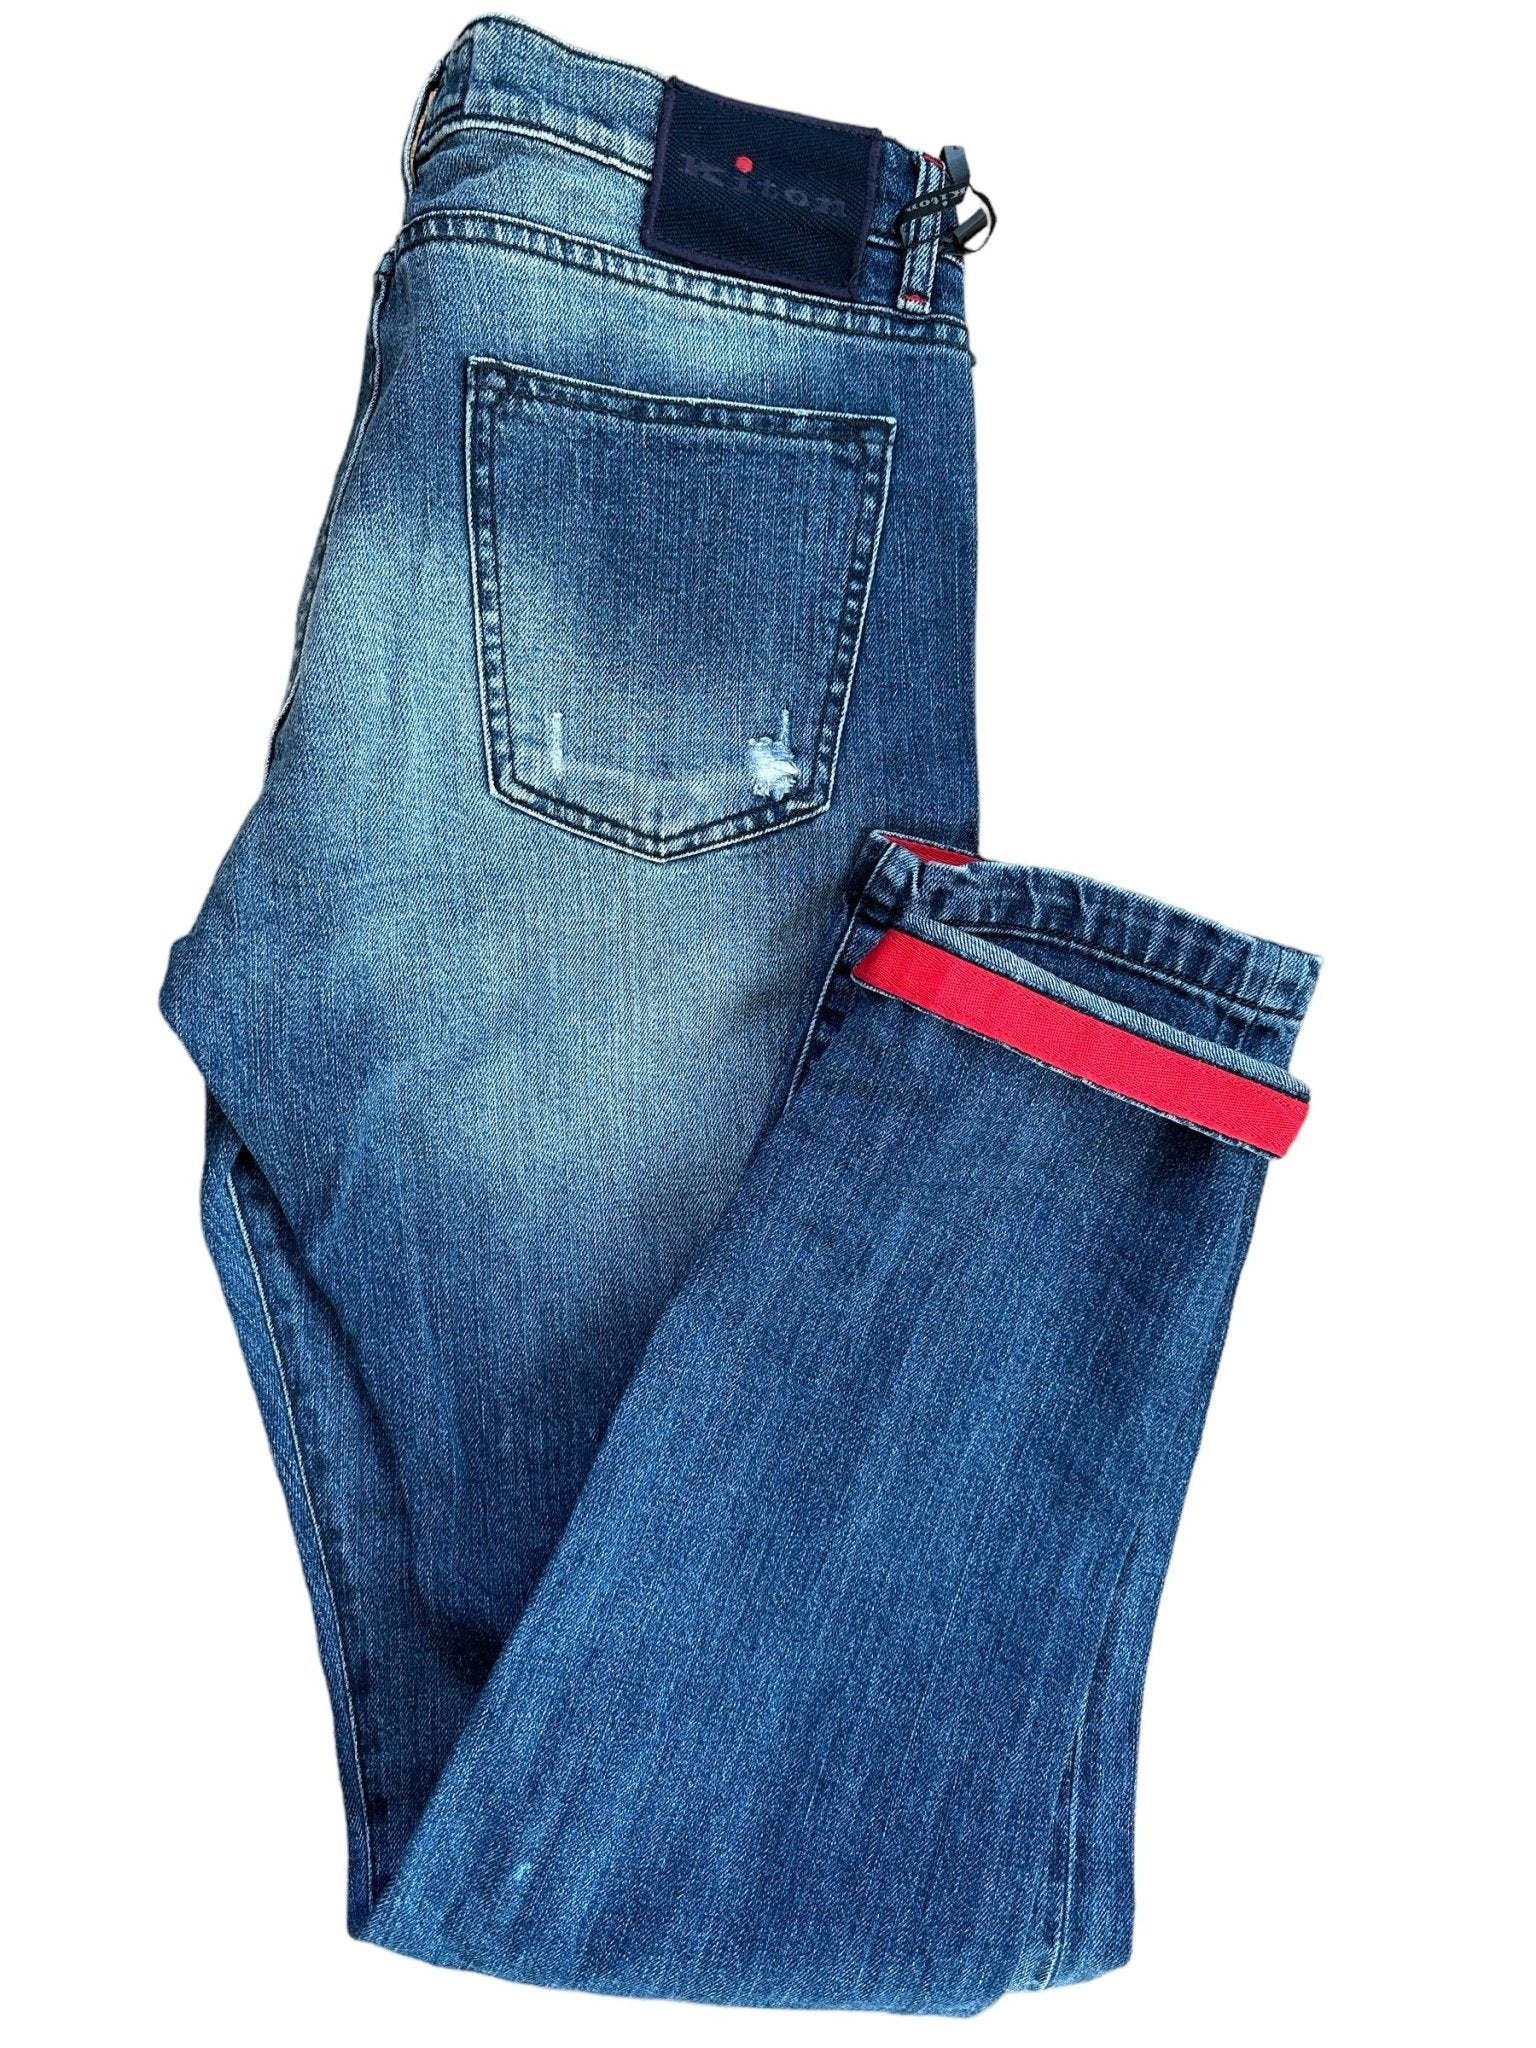 Kiton Jeans washed - 24/7 Clothing